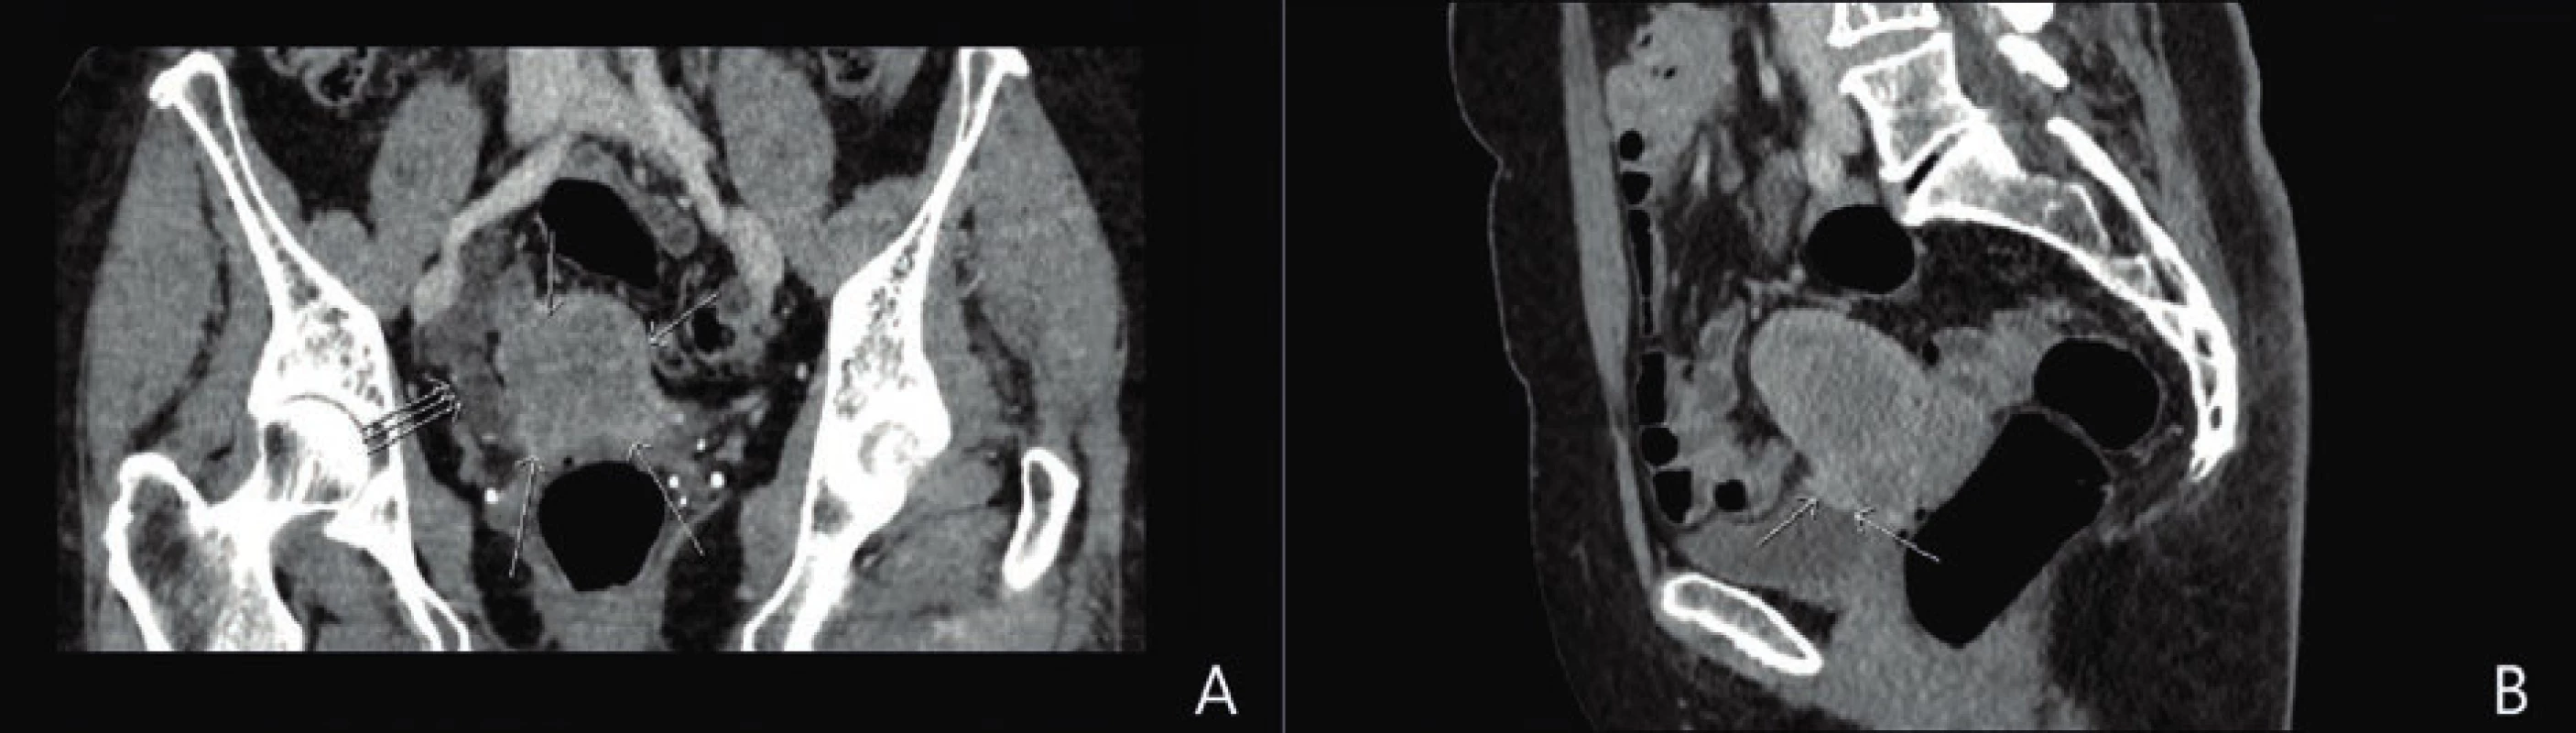 CT pánve v koronární a sagitální rovině.<br>
A: V koronární rovině patrná nehomogenní měkkotkáňová expanze v oblasti dělohy (→), dilatace distálního úseku pravostranného ureteru ( )
s obstrukcí v úrovni křížení ureteru a tumoru dělohy.<br>
B: V sagitální rovině děloha celkově nezvětšená, naznačené nehomogenní ložisko ve ventrální části krčku dělohy s infiltrací kraniální stěny
močového měchýře (→).